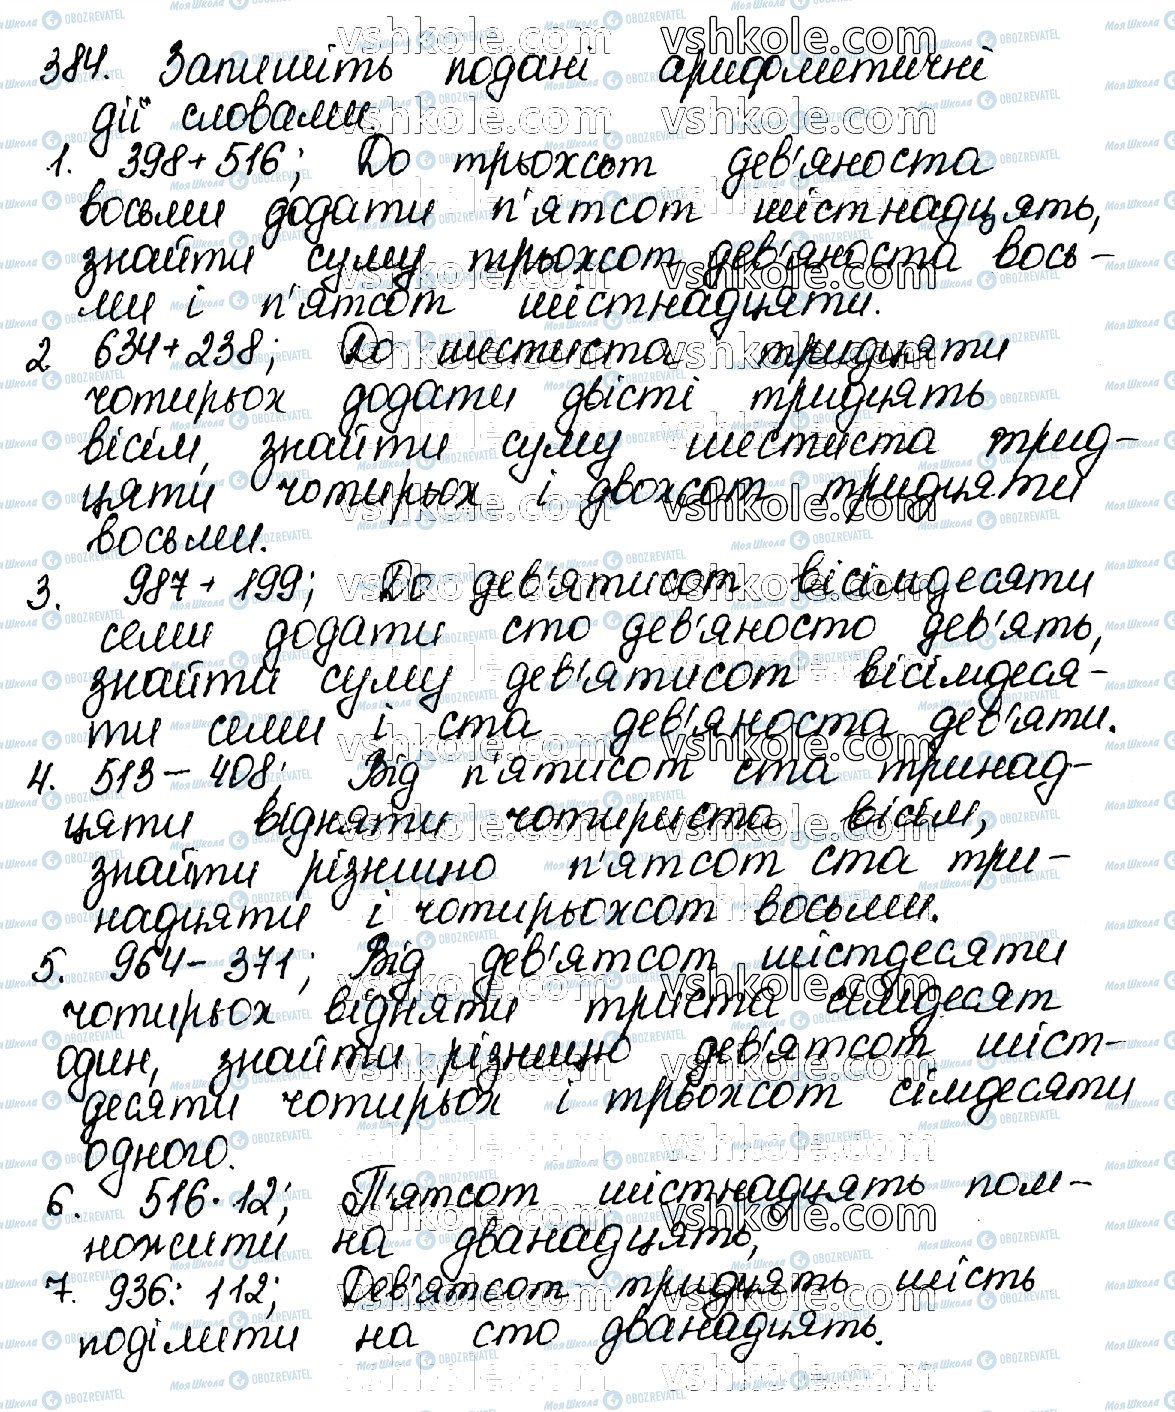 ГДЗ Українська мова 10 клас сторінка 384